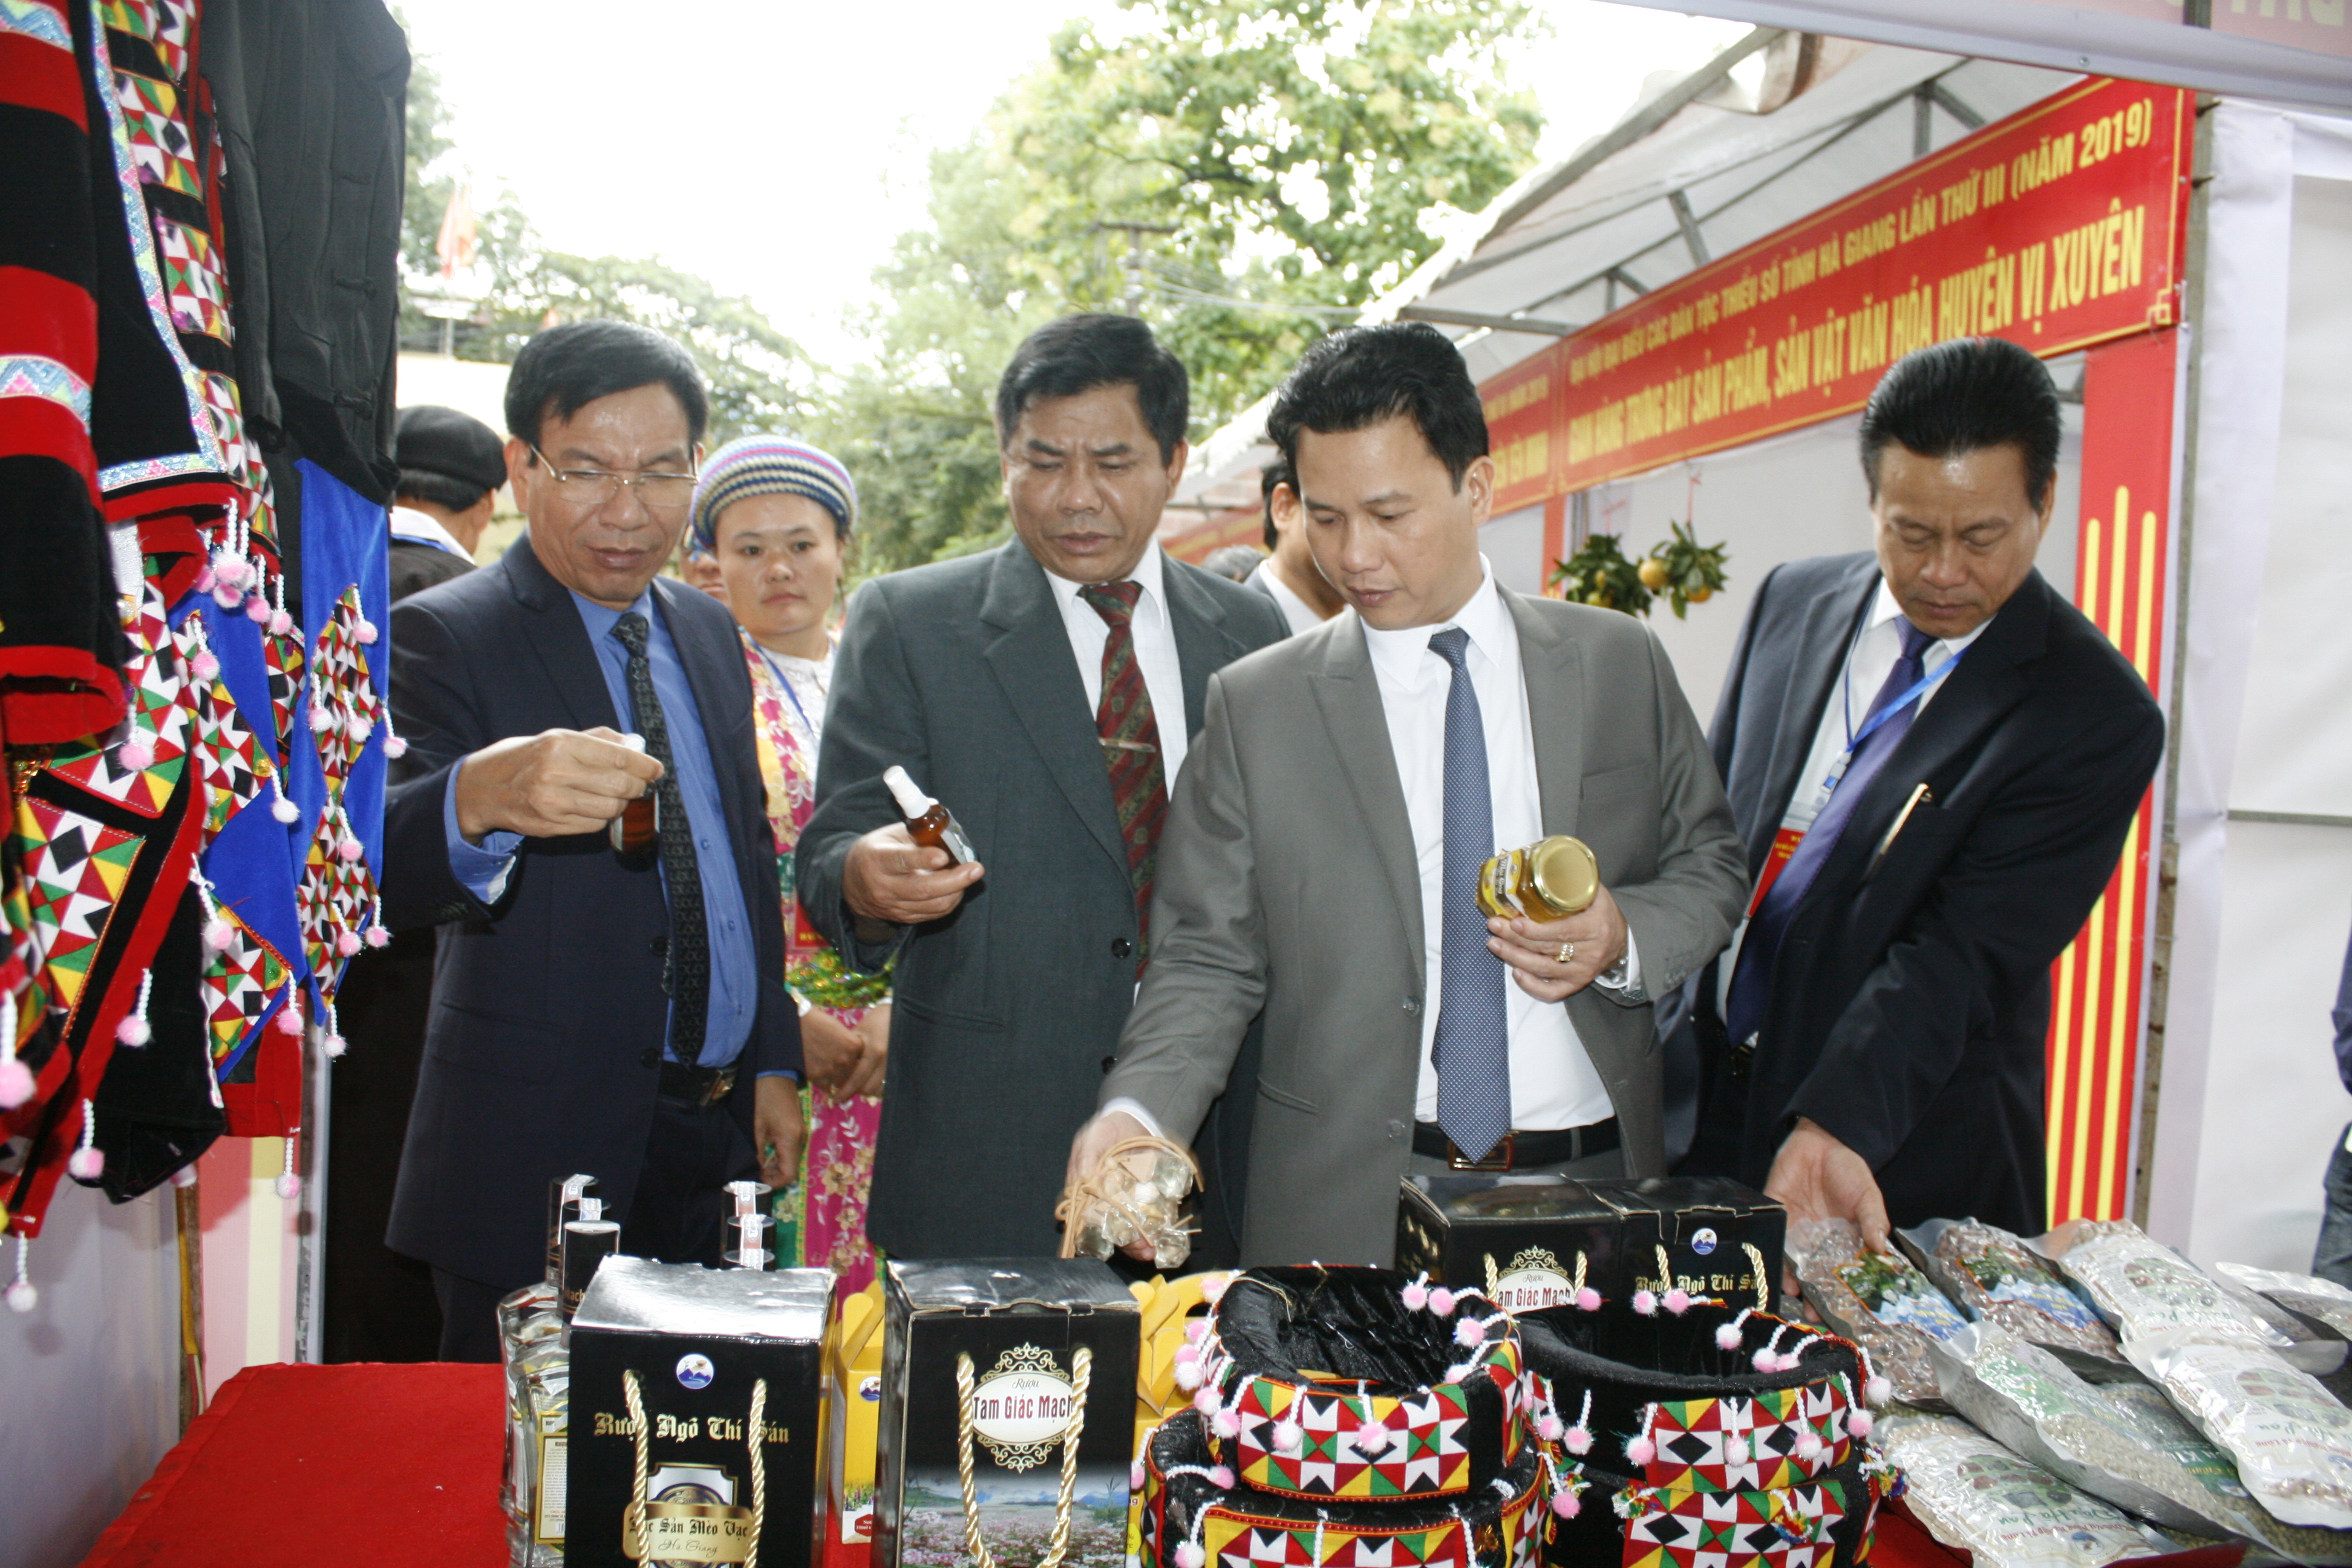 Thứ trưởng, Phó Chủ nhiệm UBDT Y Thông (thứ 2 từ trái sang) cùng các đại biểu thăm quan các gian hàng trưng bày.